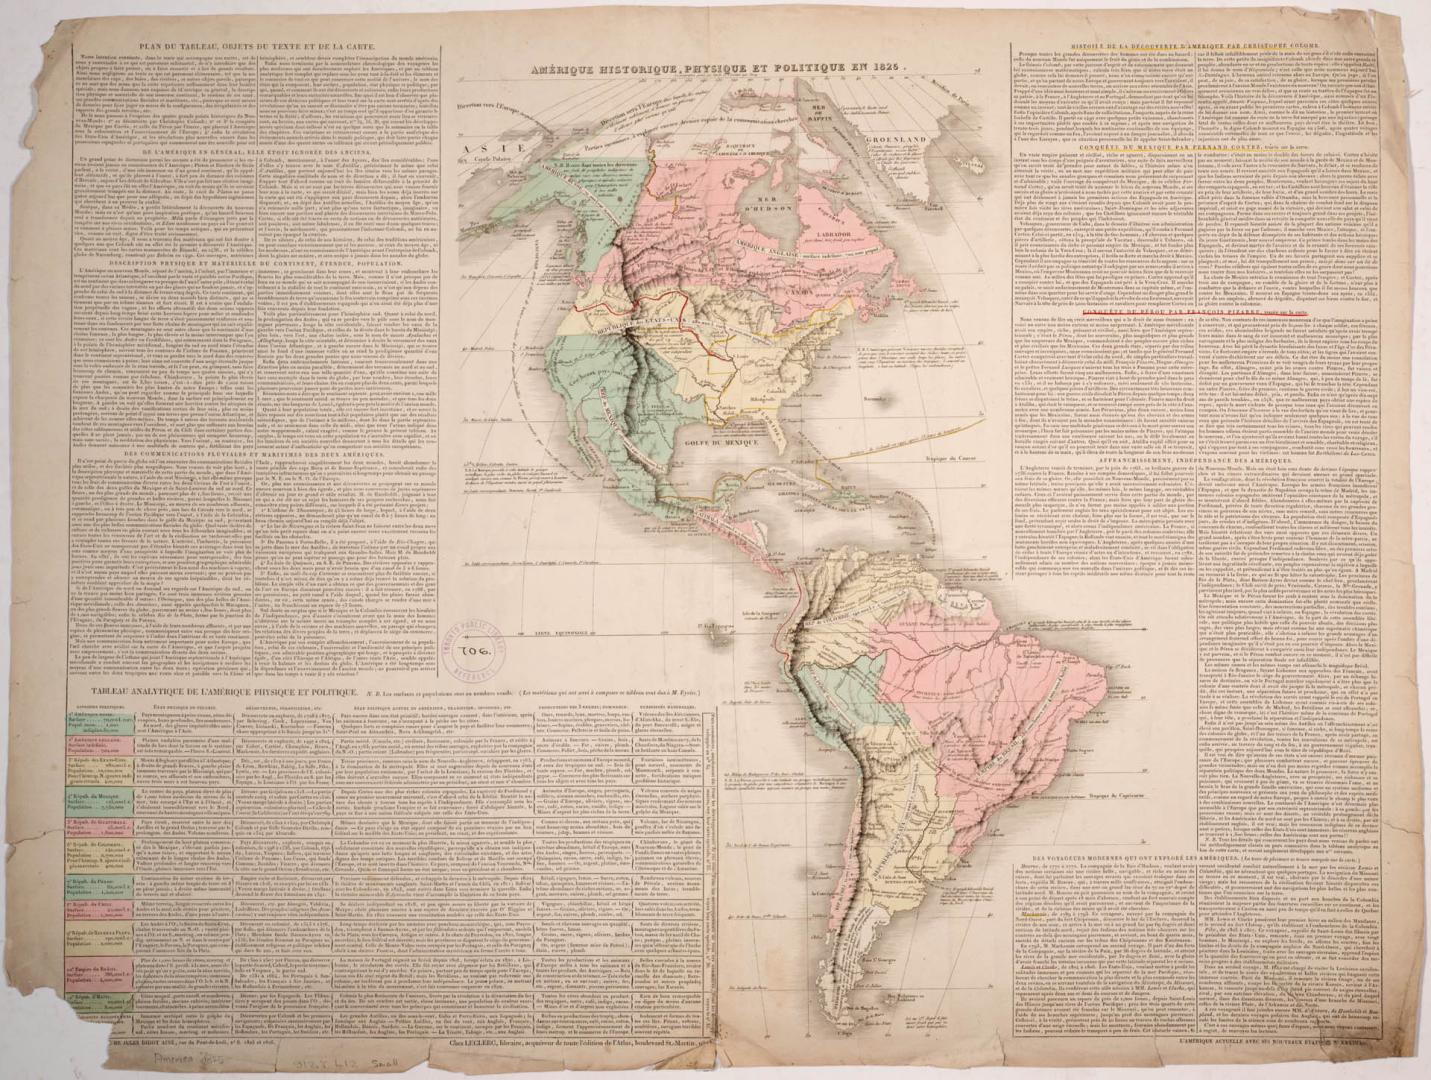 Amerique Historique, Physique et Politique en 1825